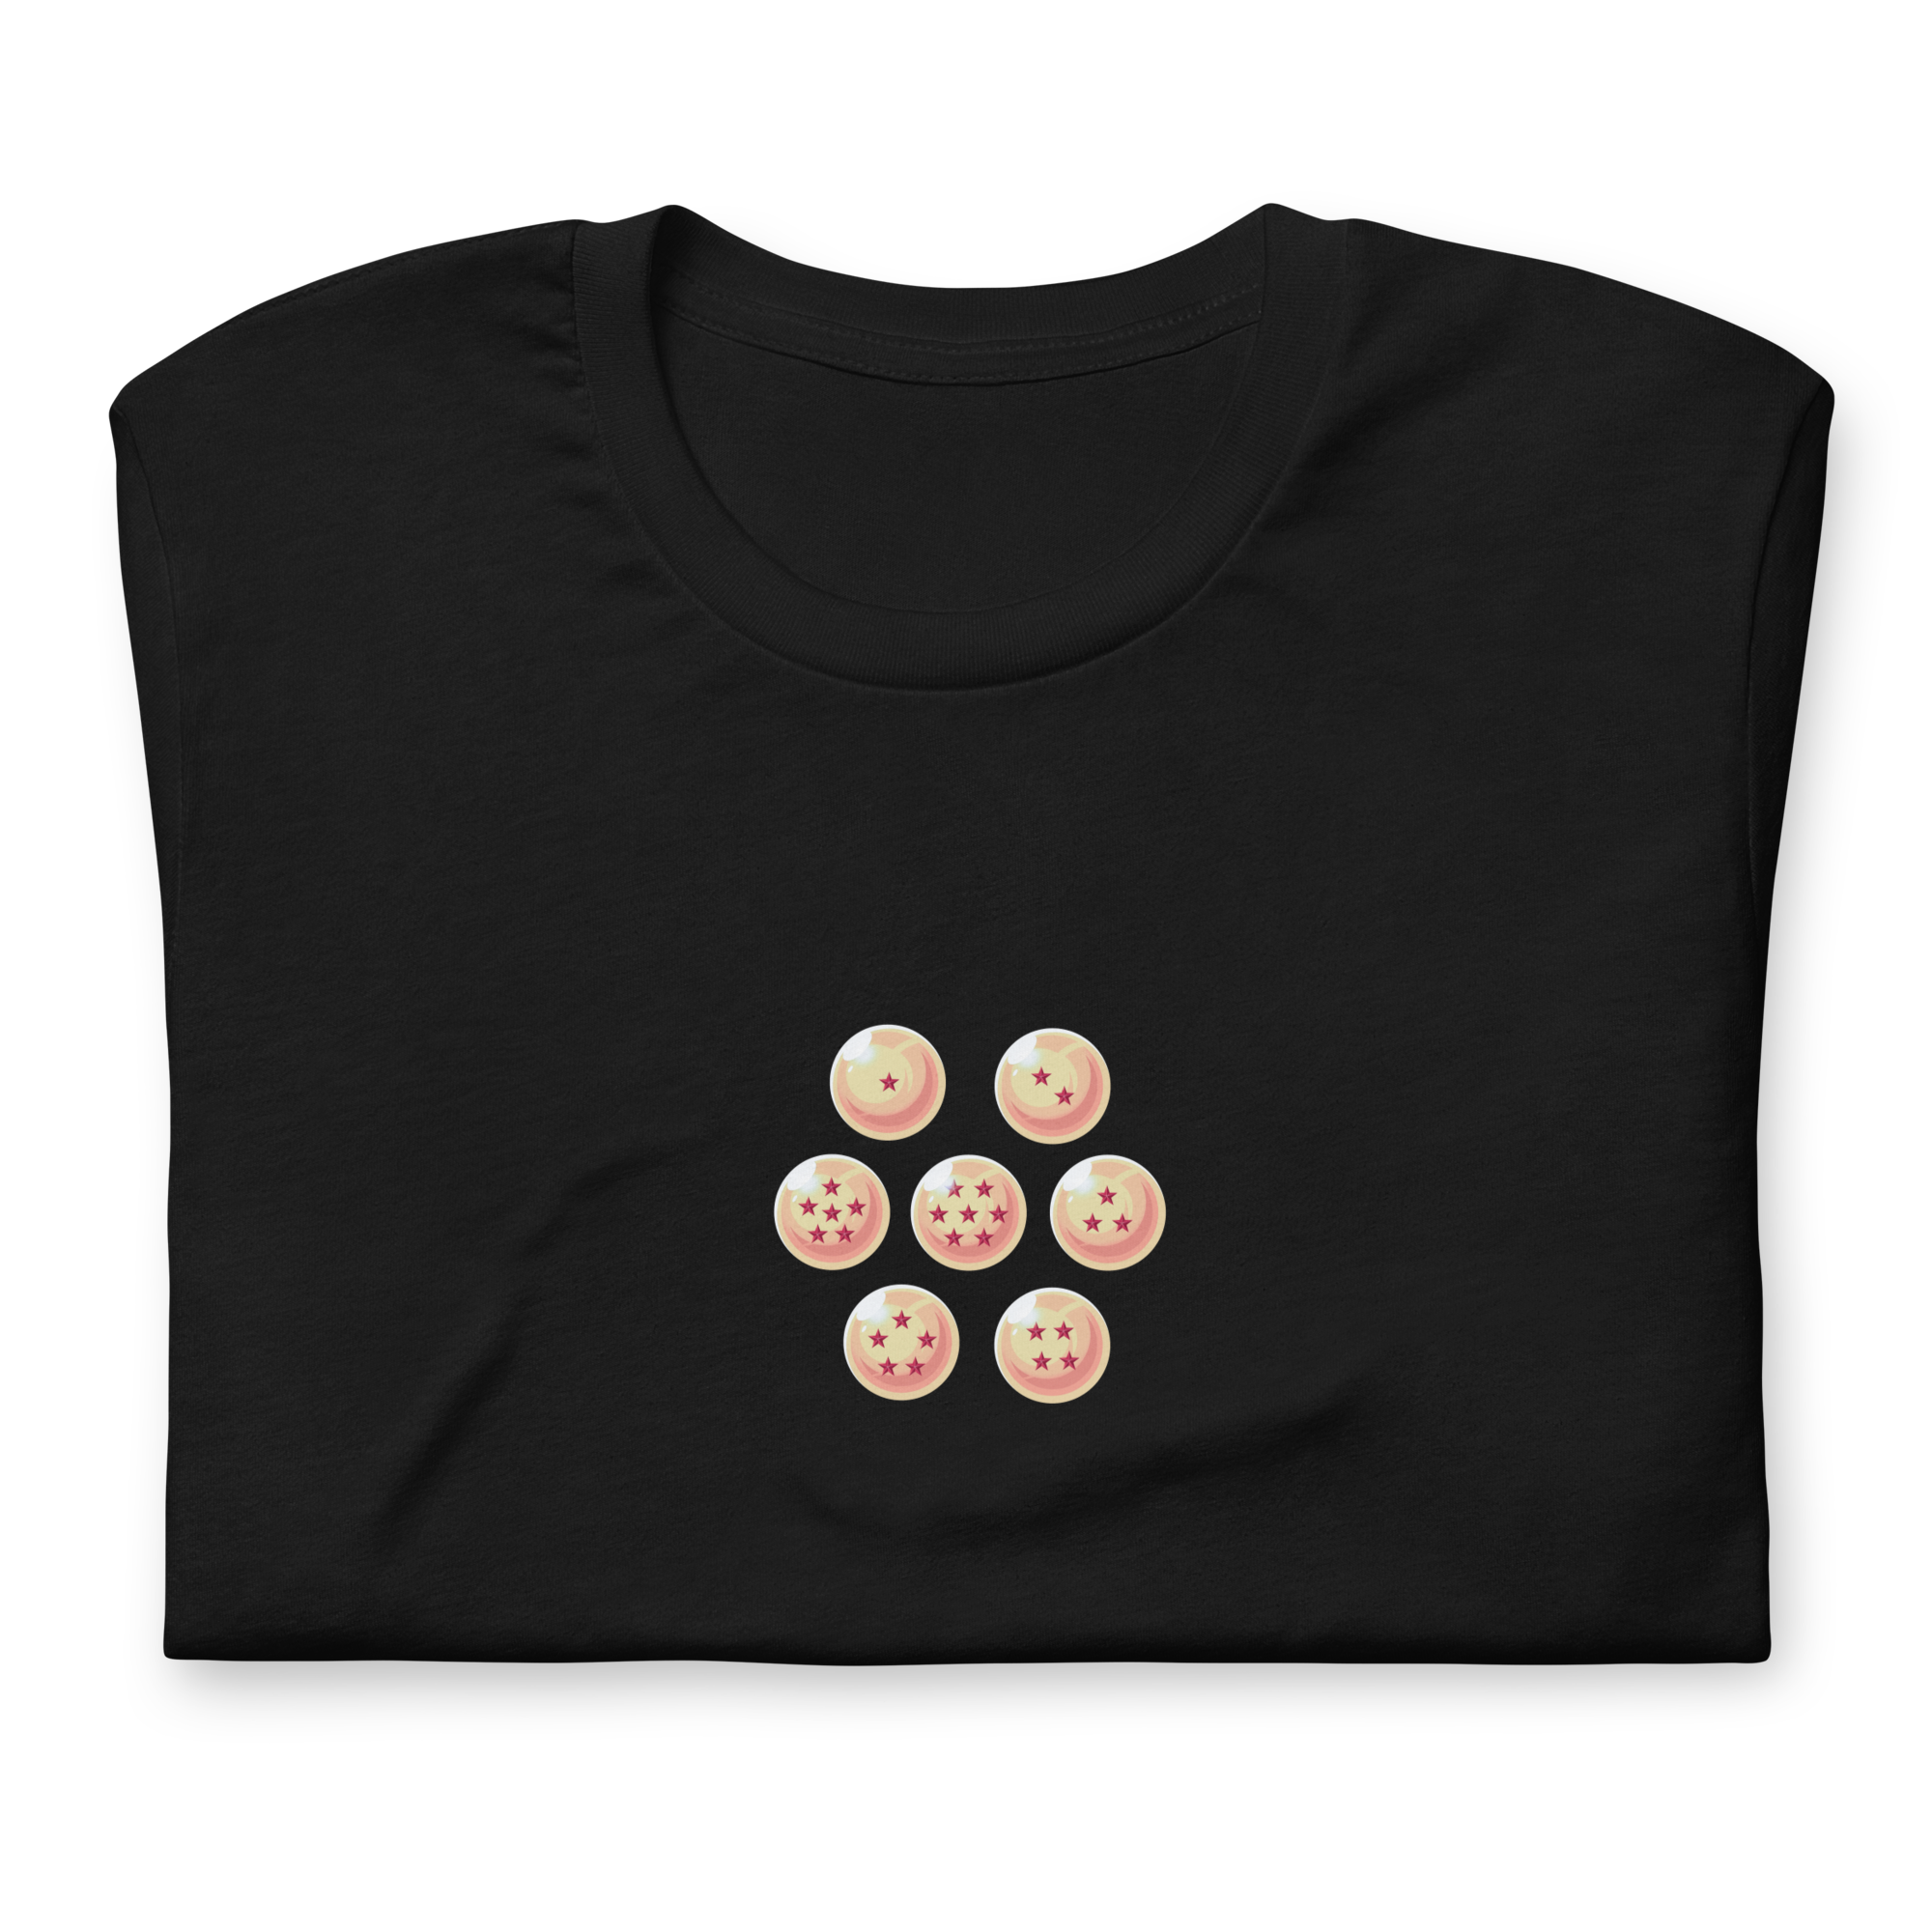 SAIYANS (ULTRA) - T-Shirt Back Print